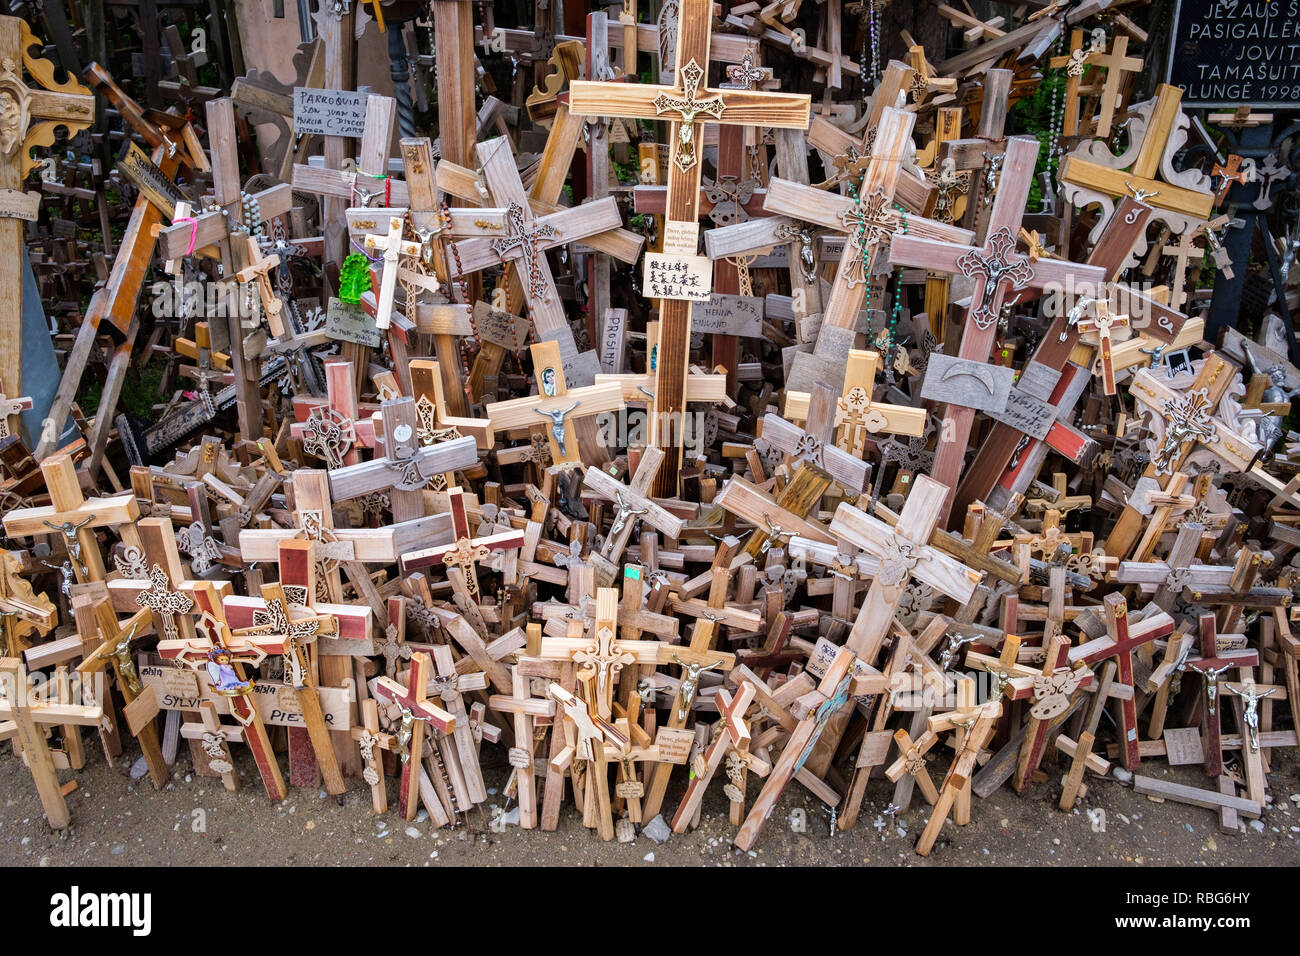 La lituania, Siauliai: la Collina delle Croci. La Collina delle Croci, un luogo di pellegrinaggio, simbolo del lituano defiance di invasori stranieri, con oltre 100.000 Foto Stock